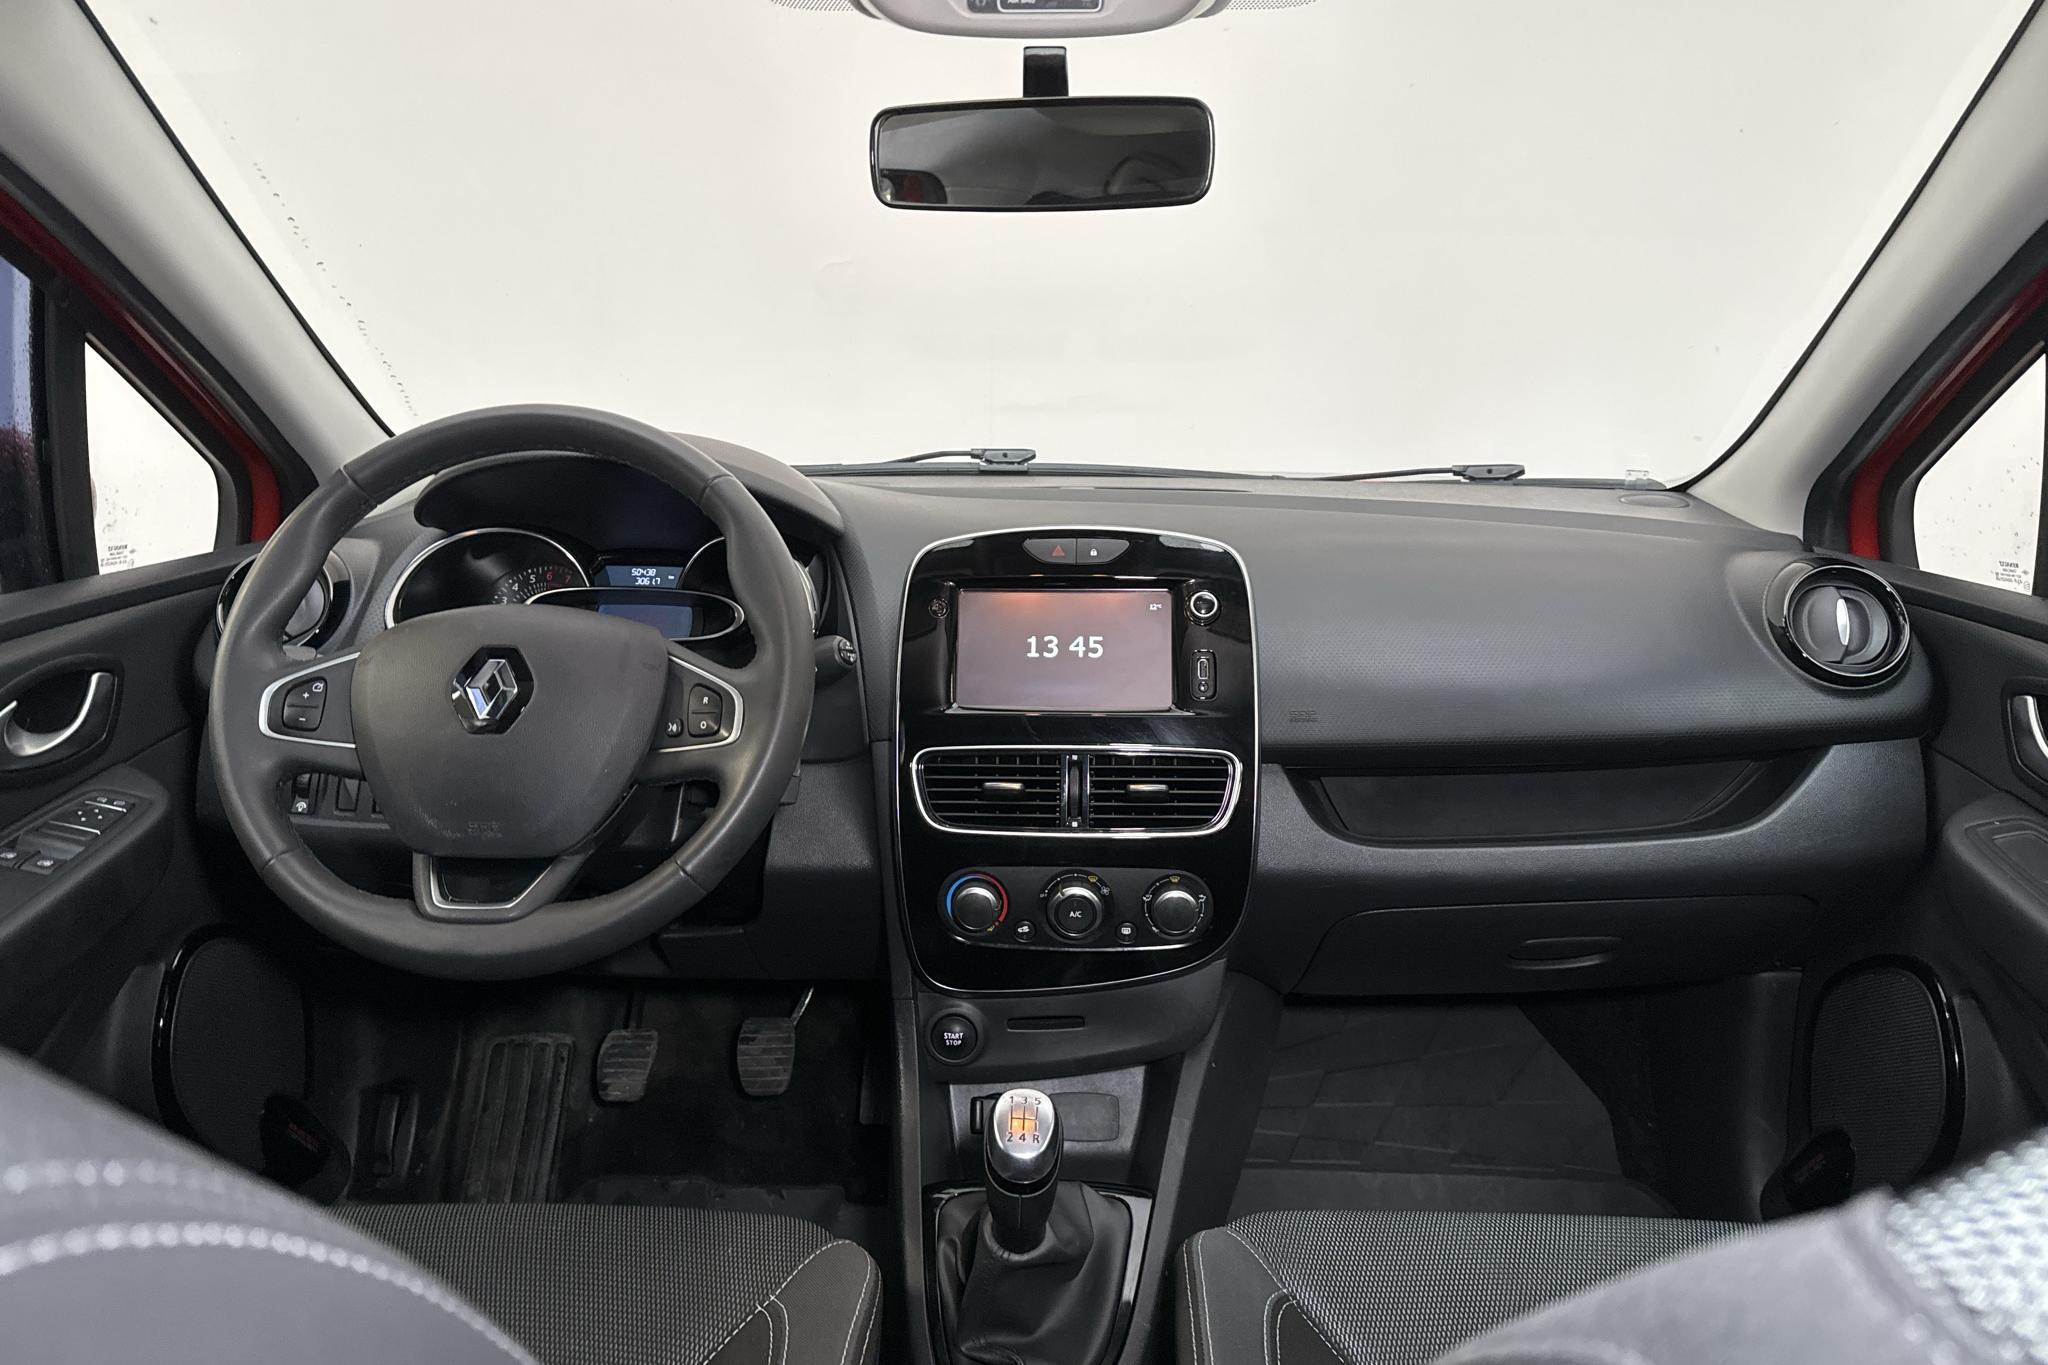 Renault Clio IV 1.2 16V 5dr (75hk) - 5 043 mil - Manuell - röd - 2018